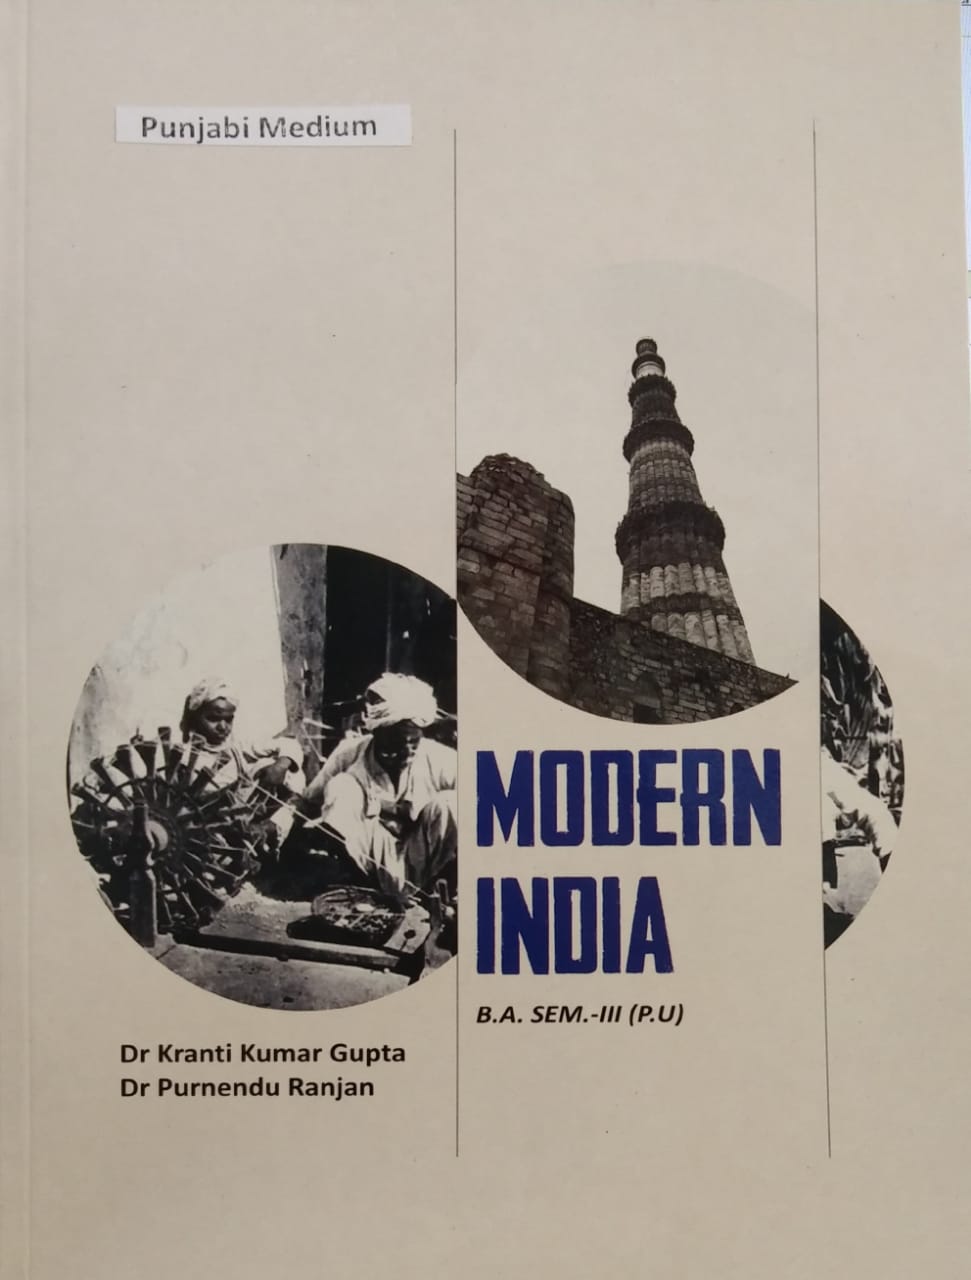 Modern India in punjabi B.A. Sem. 3, (P.U.) by Dr. Kranti kumar gupta & Dr. Purnendu ranjan edition 2022